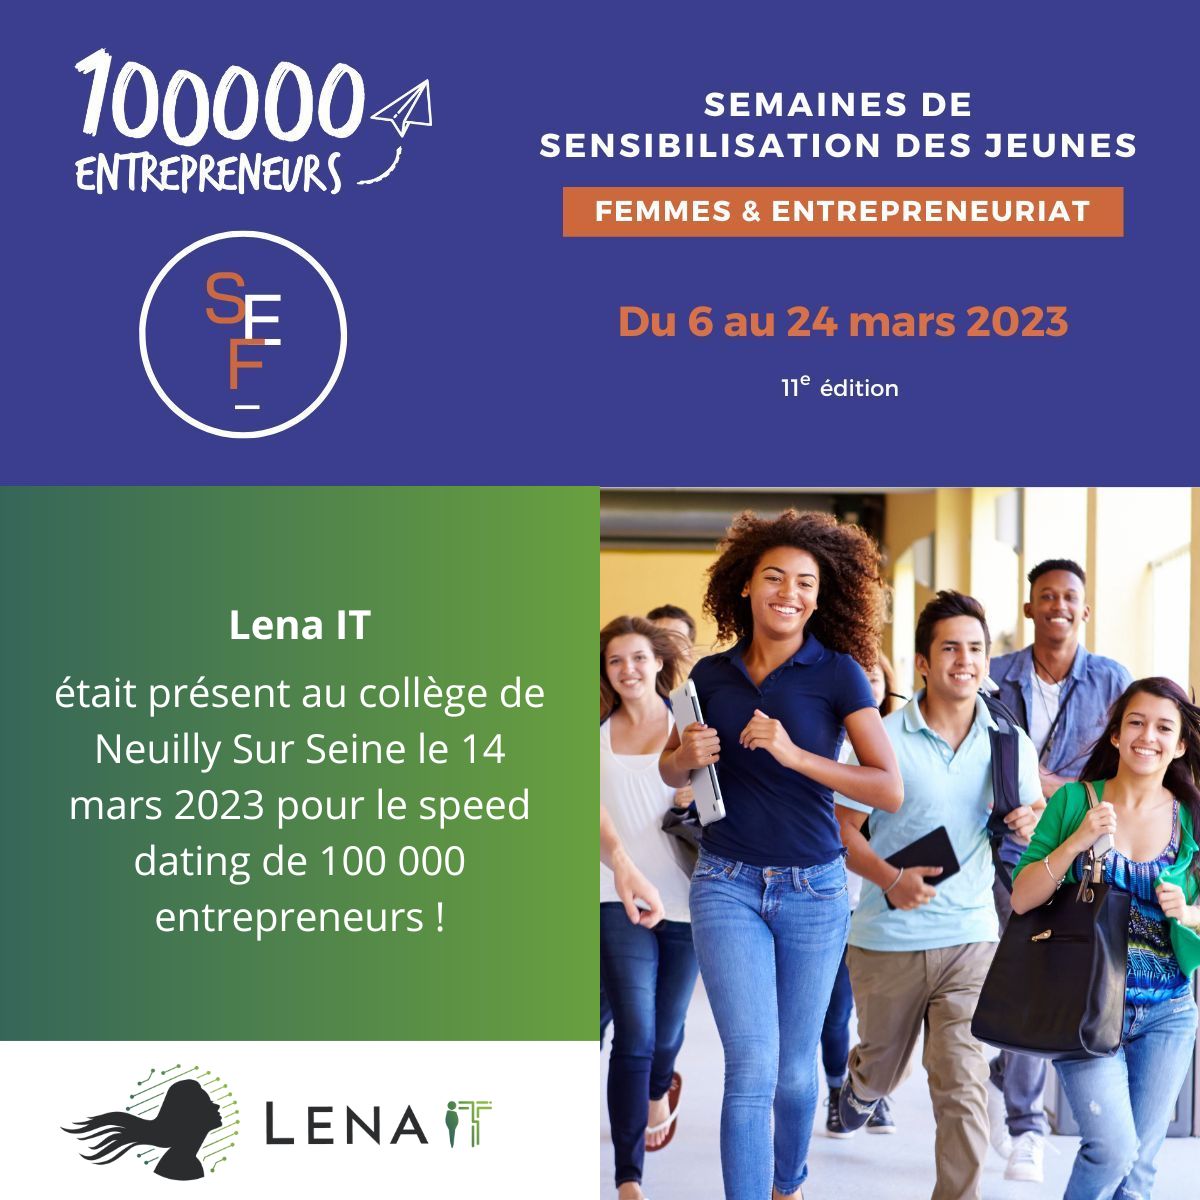  Lena IT s'engage dans la féminisation des métiers du numérique avec 100000 entrepreneurs